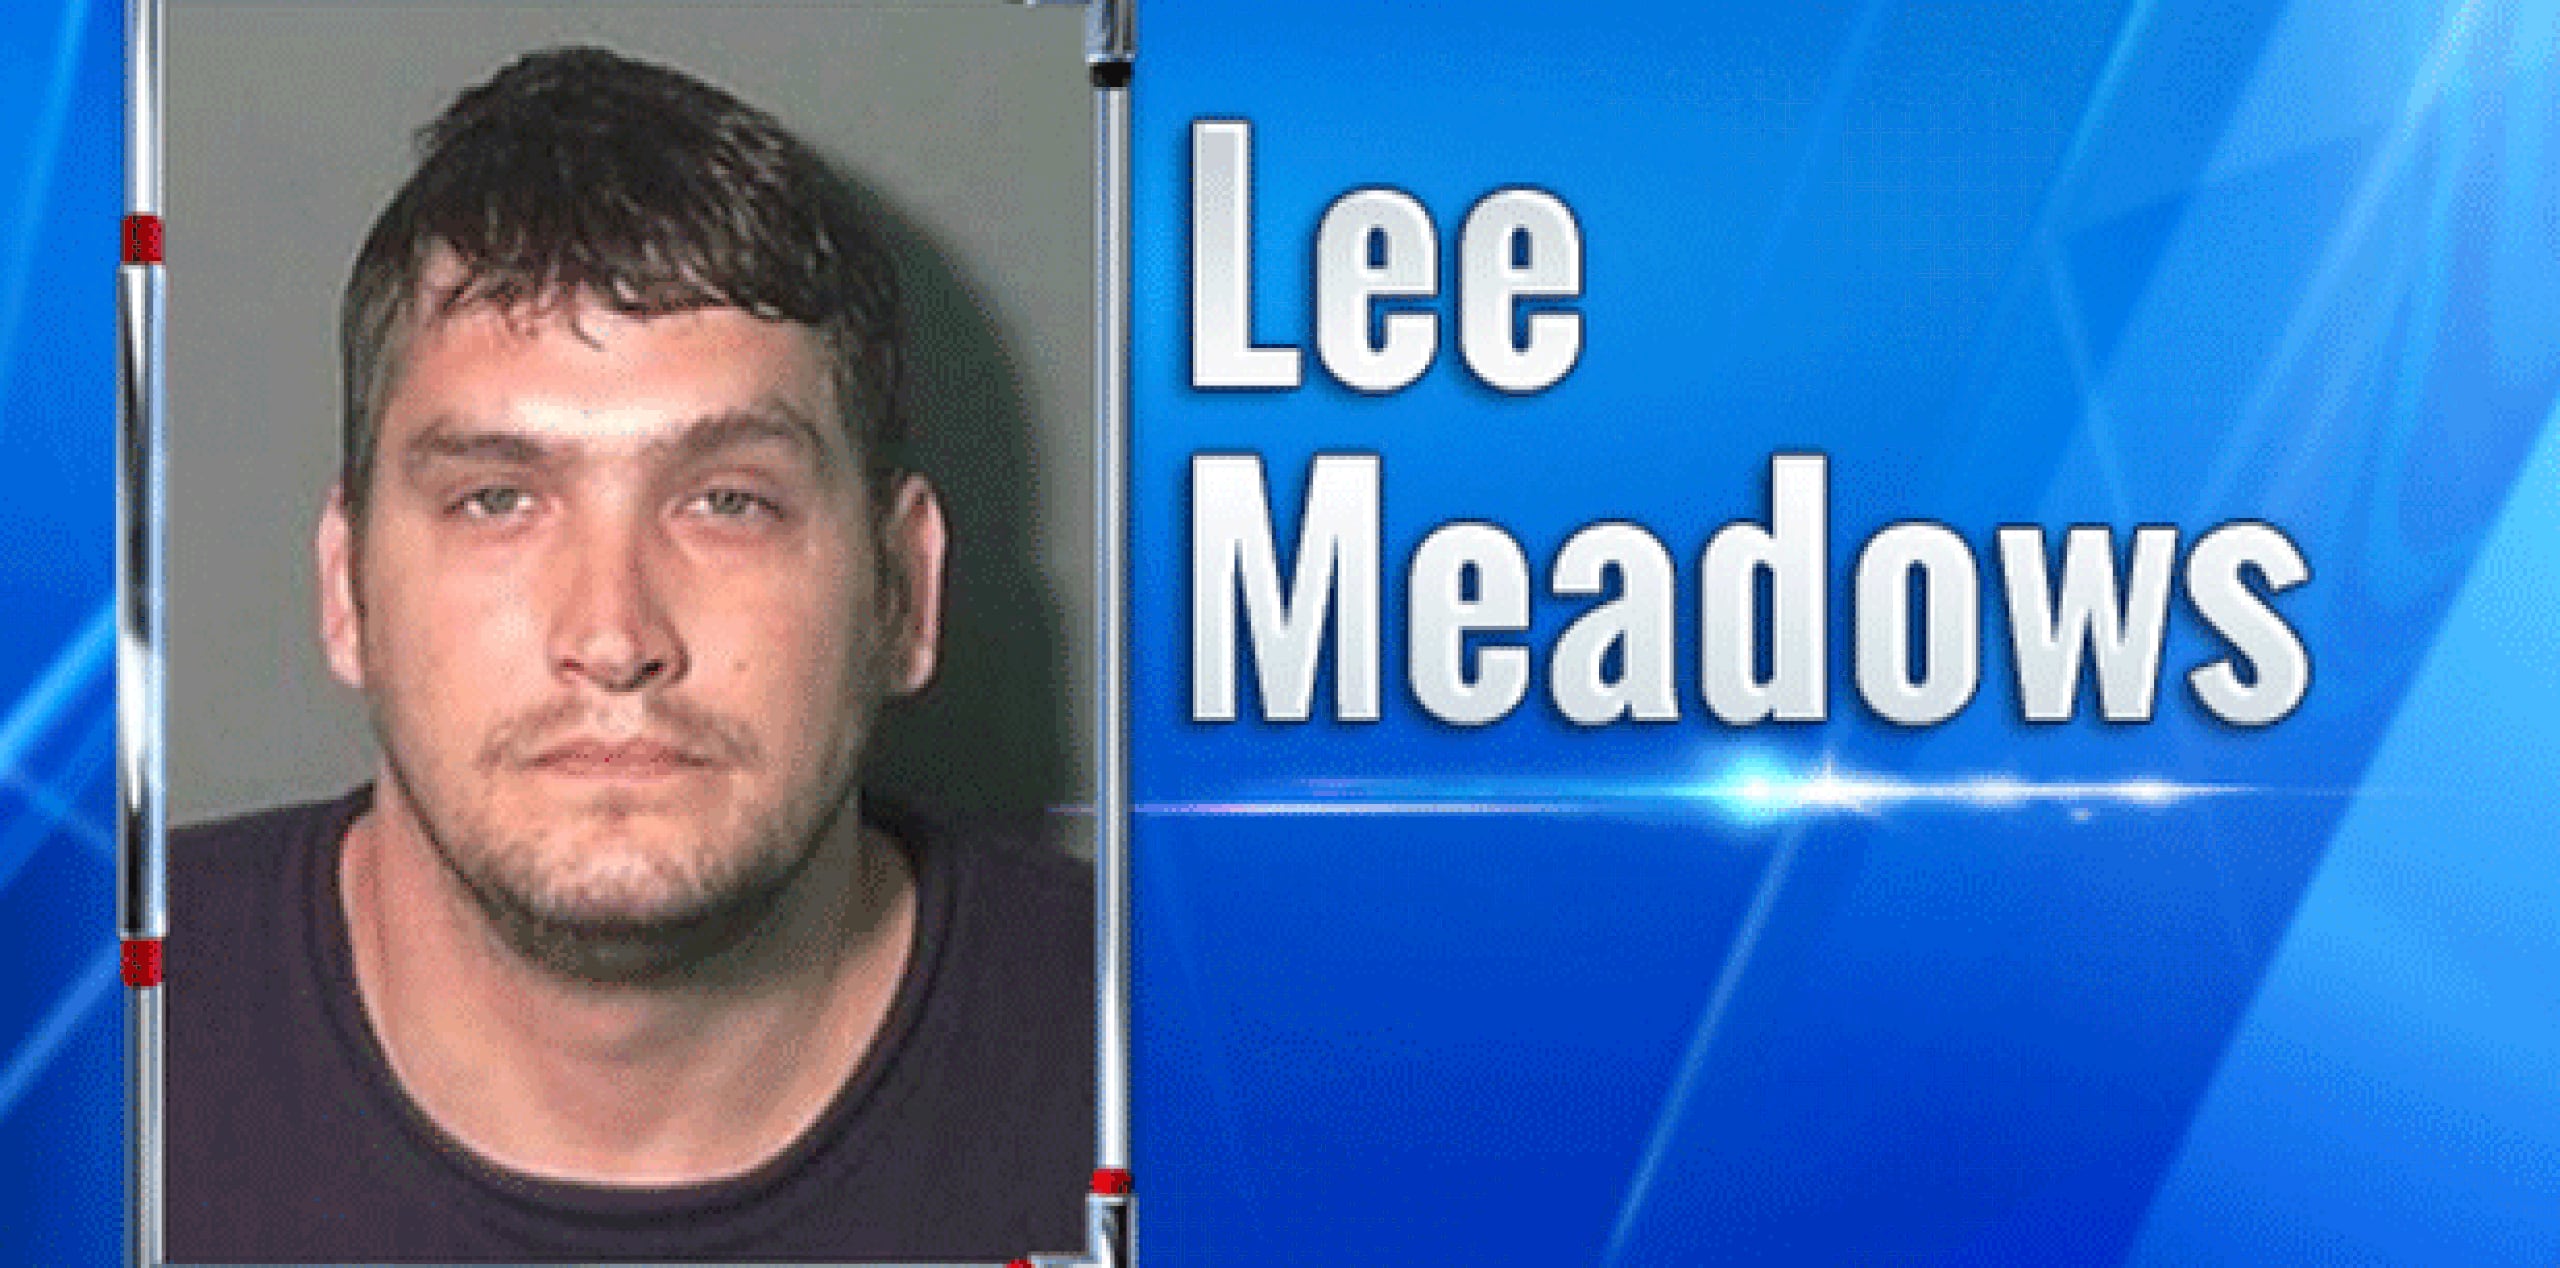 Numerosos medios de prensa reportan que Lee Meadows fue arrestado el sábado y acusado de agresión por estrangulación, agresión en segundo grado, privación ilegal de la libertad y violación. (wkrn.com)